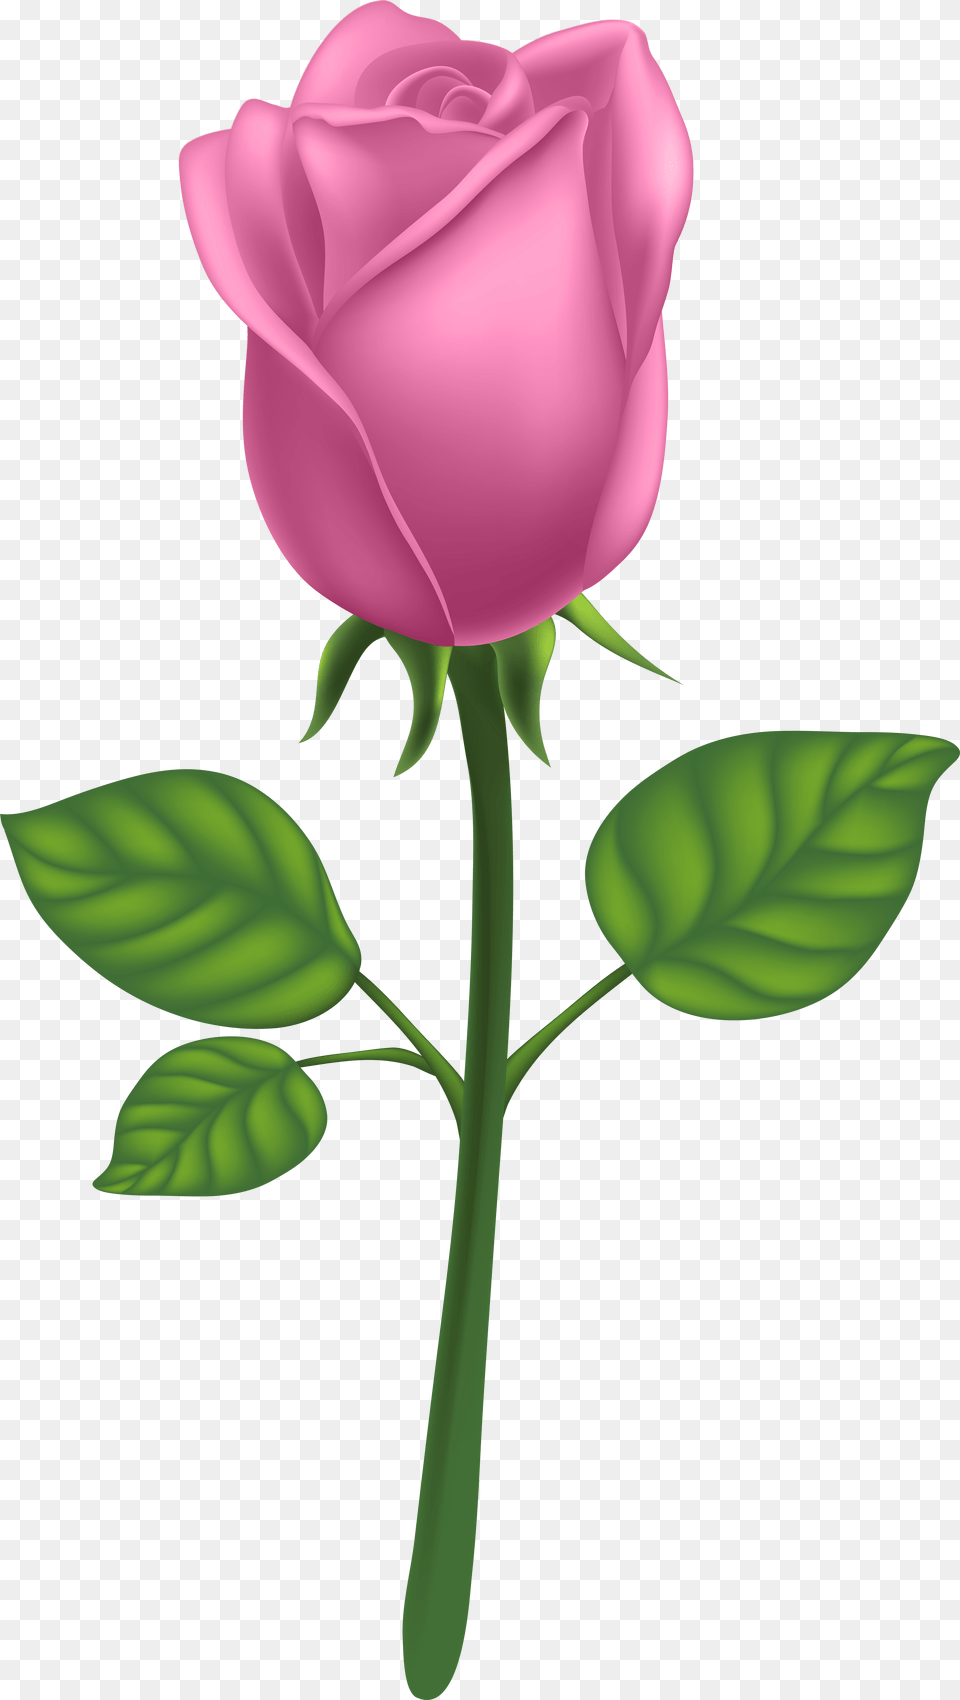 Purple Long Stem Rose Pink Rose Transparent, Flower, Plant Png Image